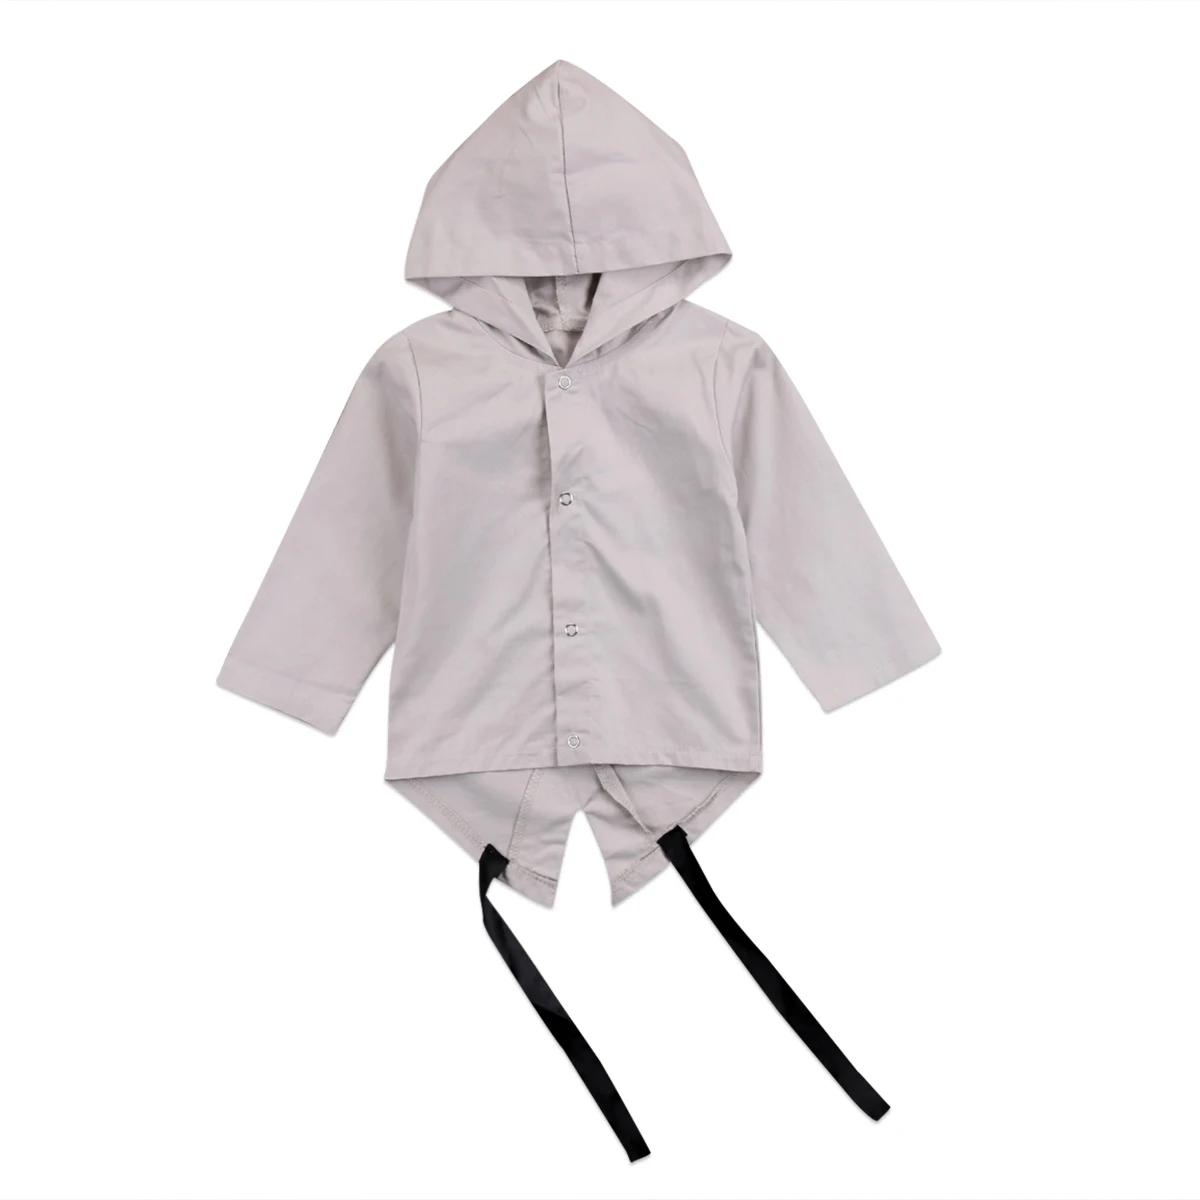 Пальто для новорожденных осенняя одежда для мальчиков детская куртка с капюшоном для мальчиков, пальто с капюшоном зимняя верхняя одежда для детей от 0 до 24 месяцев, bebek mon abrigo bebe - Цвет: Серый